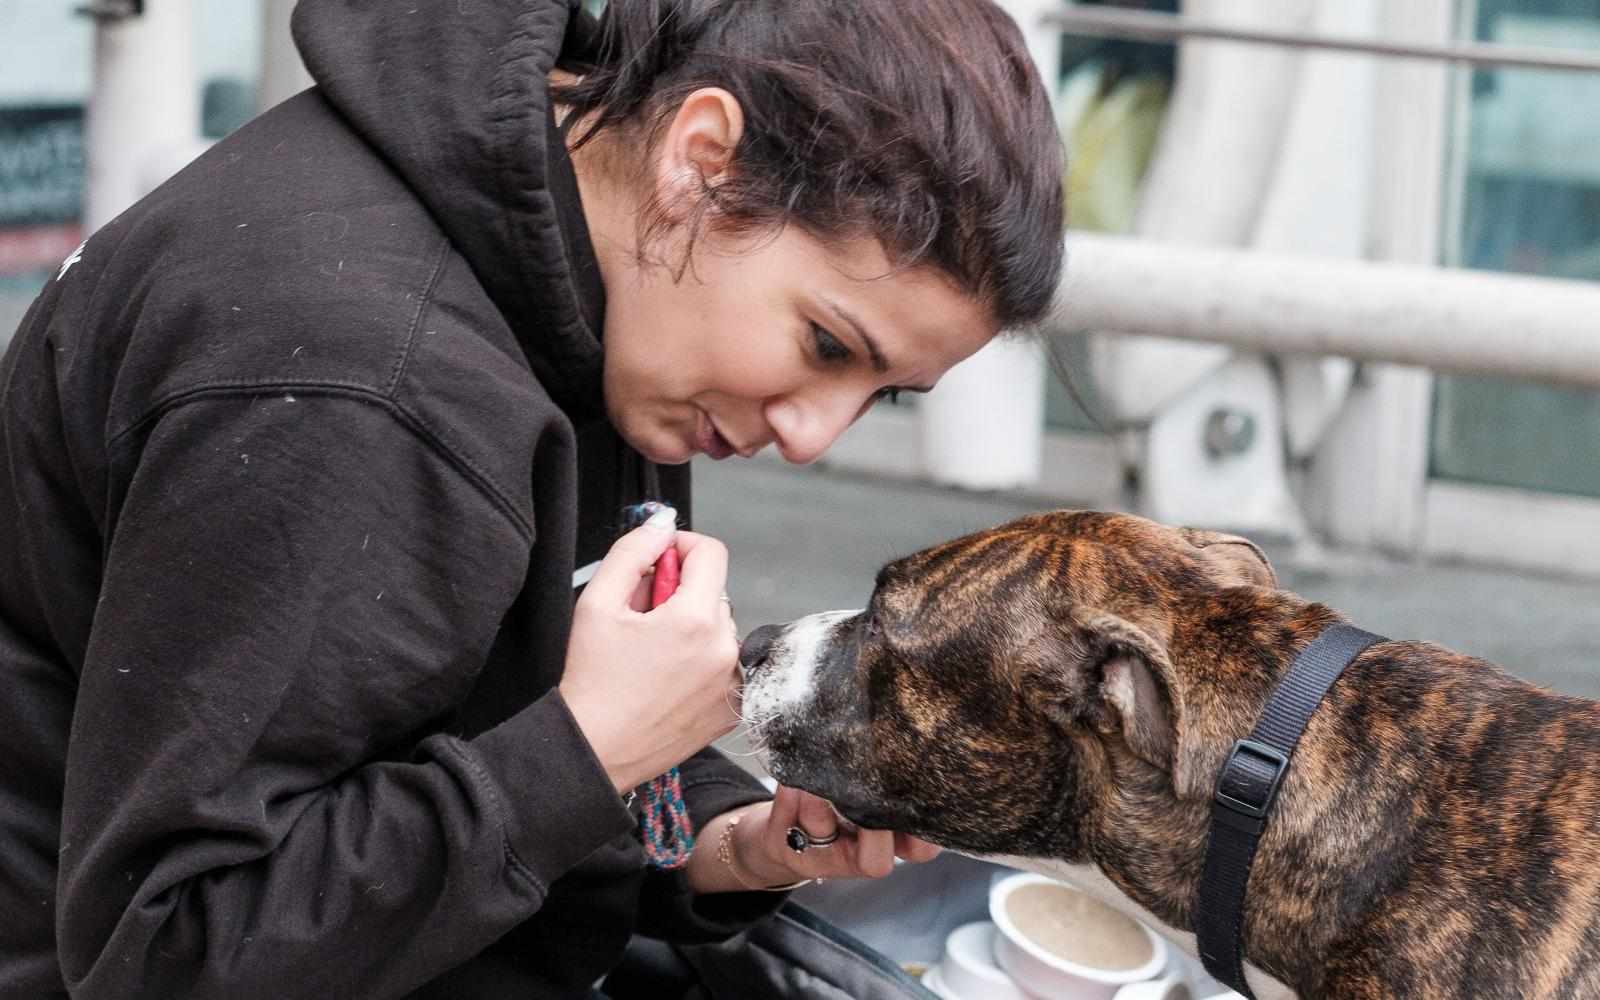 Street Vet founder Jade Statt cares for a homeless person's dog